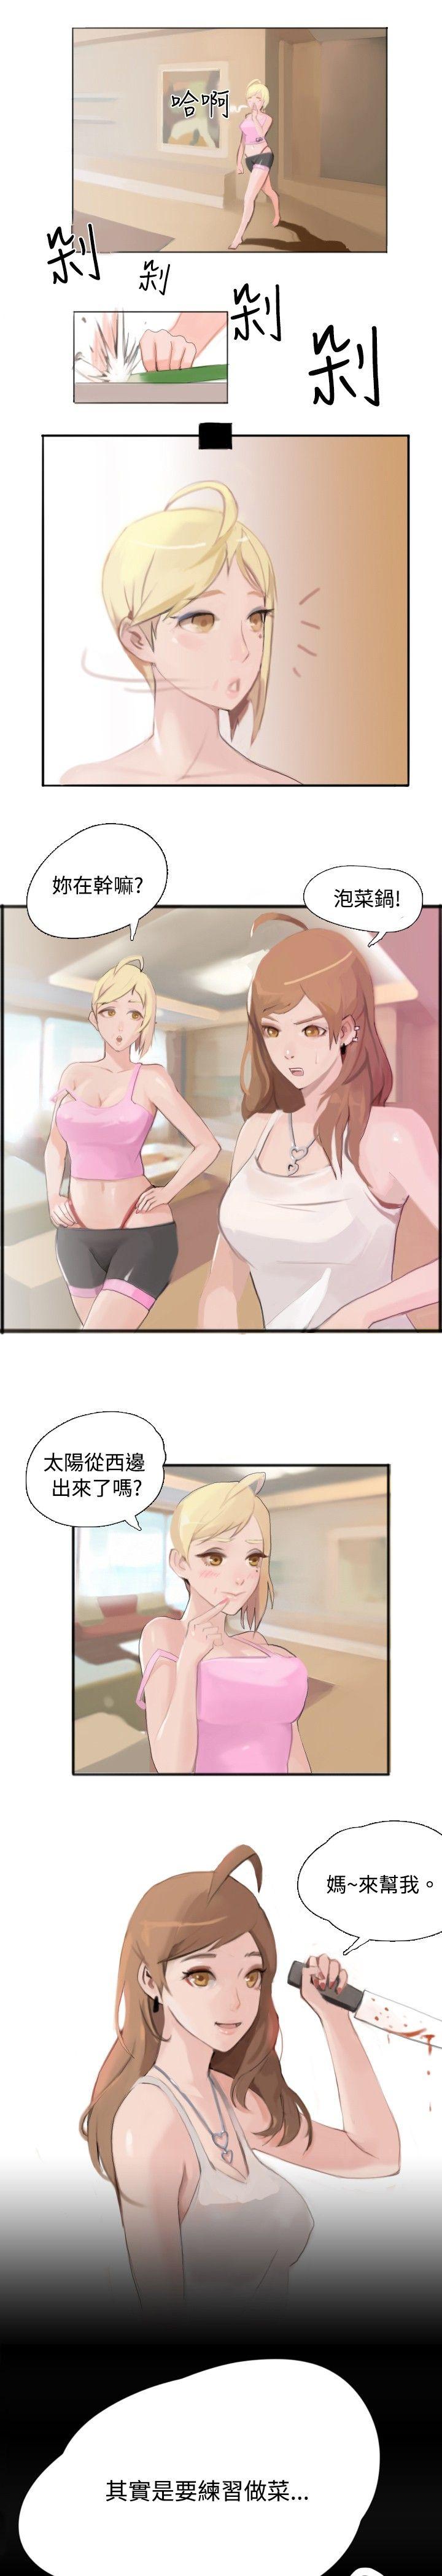 秘密Story  与型男主厨的花癡故事(中) 漫画图片7.jpg